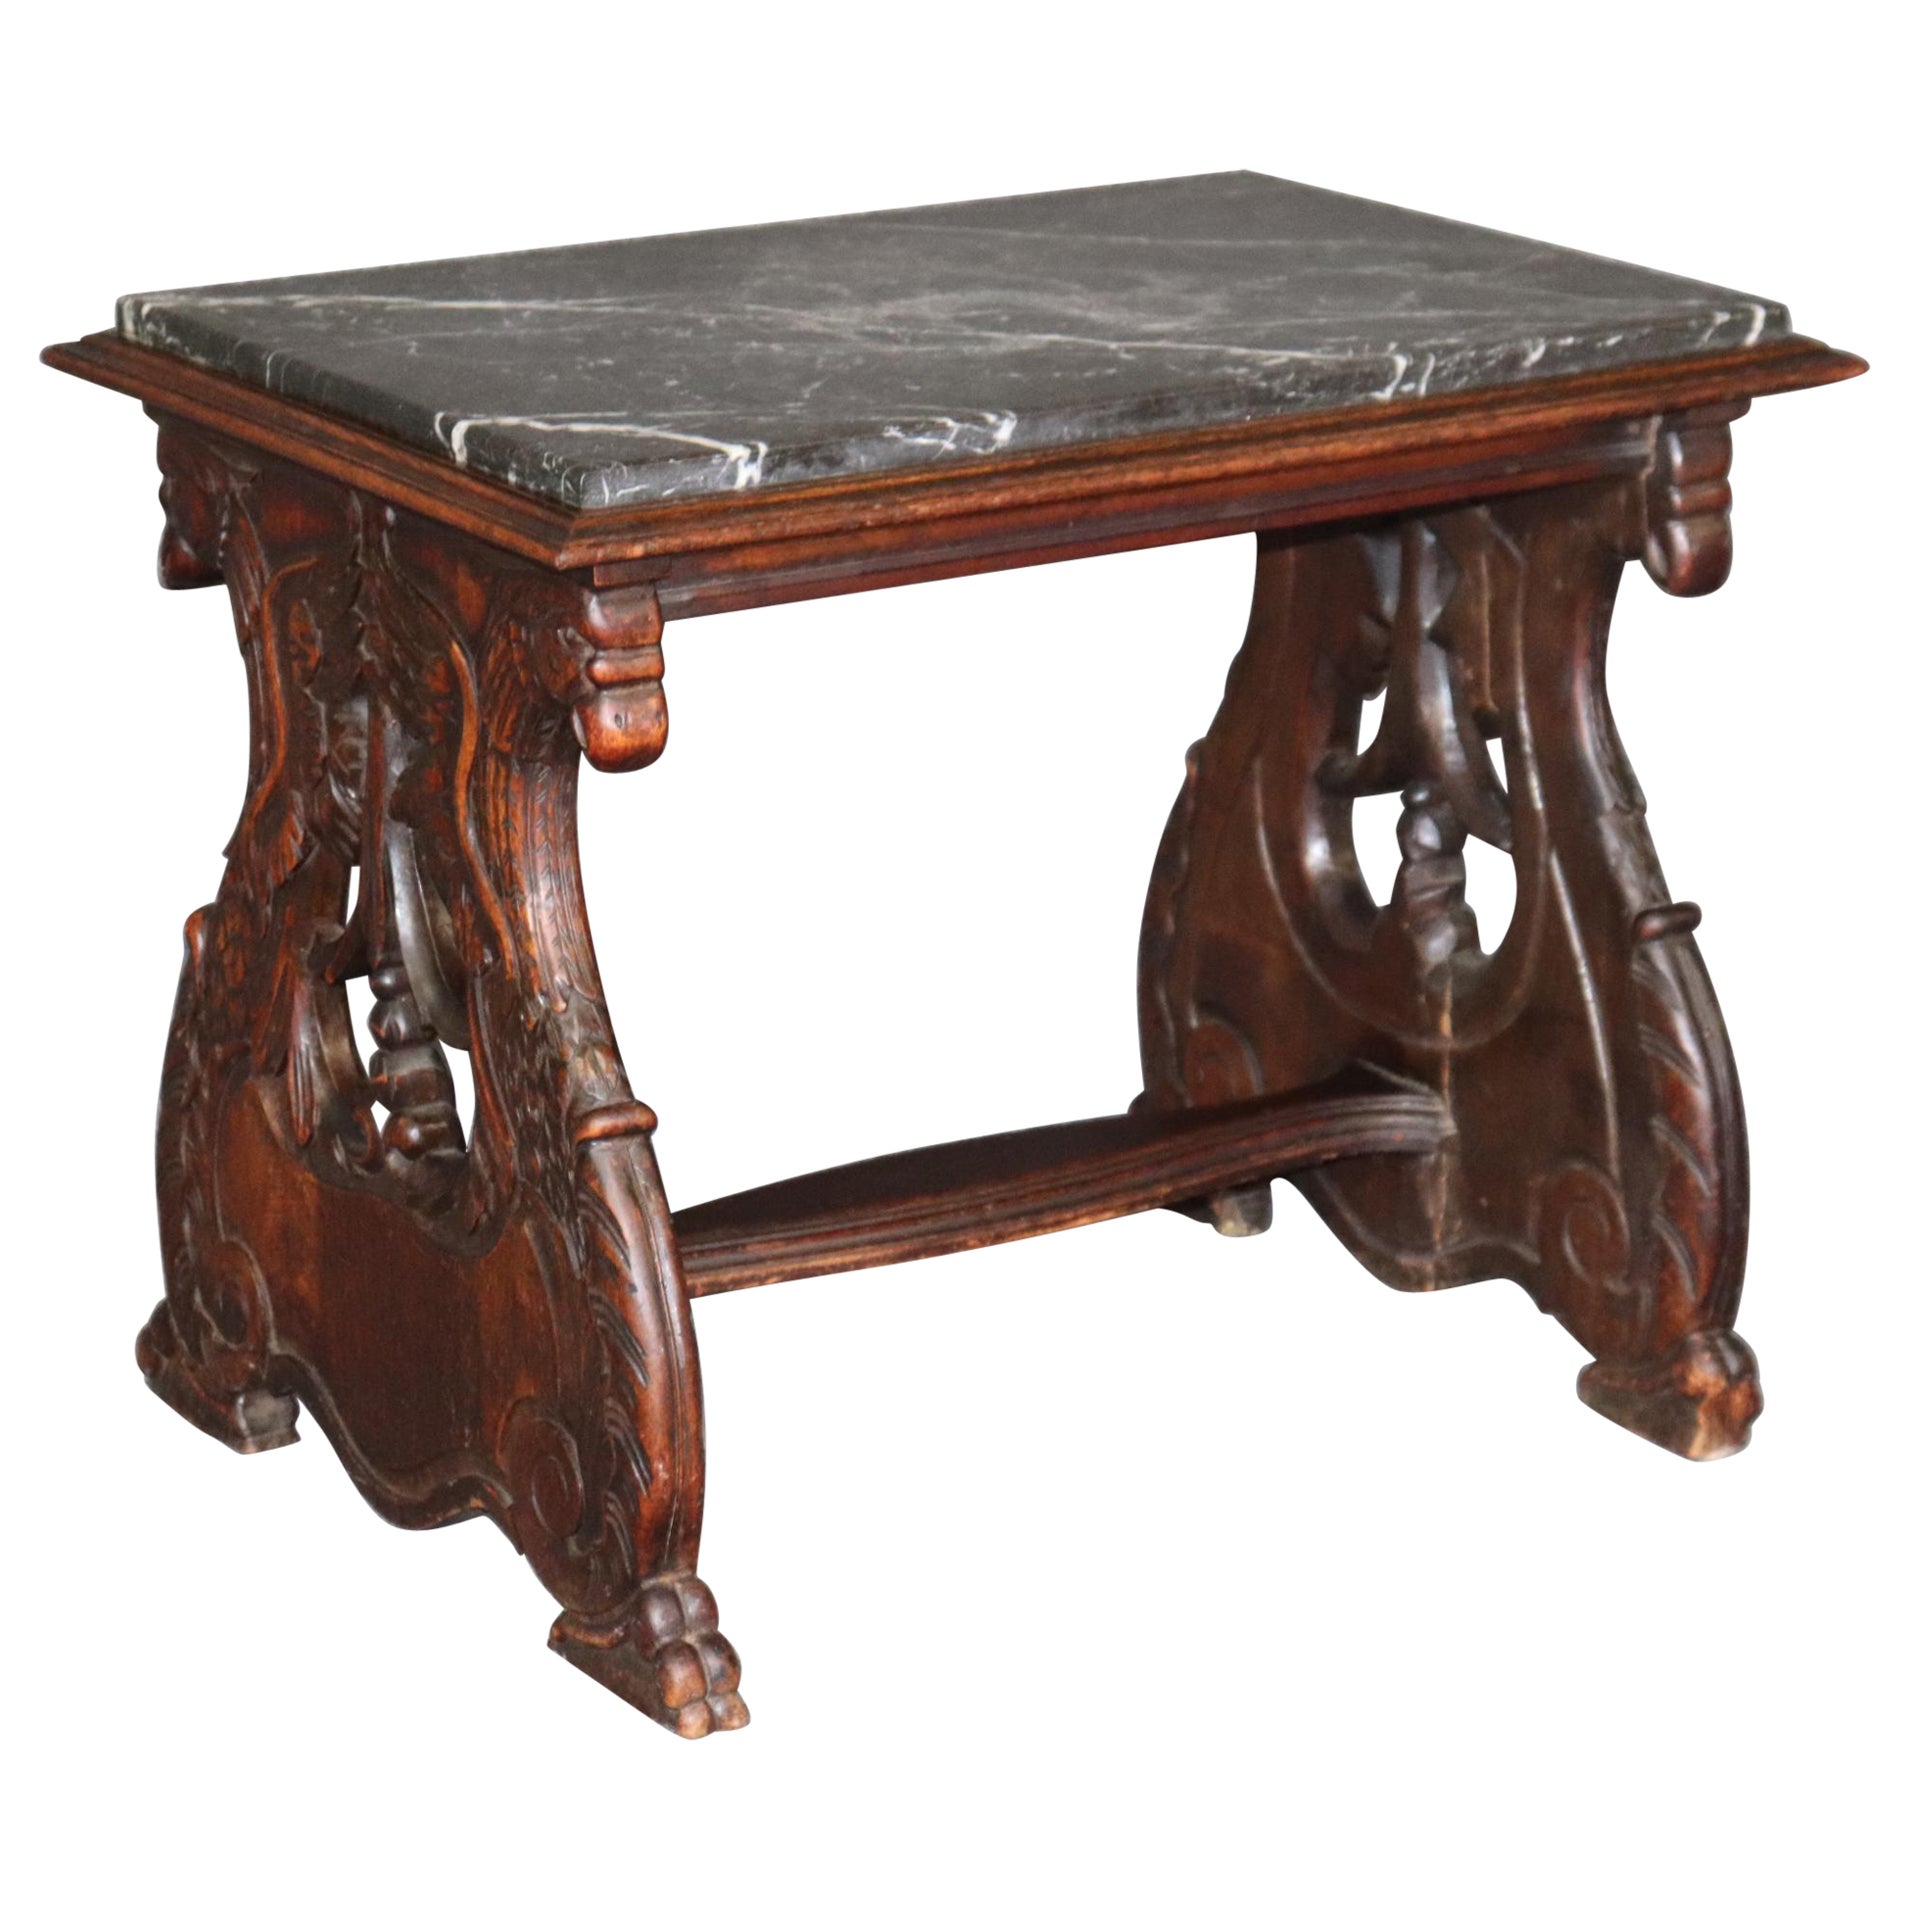 Table d'appoint, table basse, ancienne table à plateau de marbre sculptée belge du 19e siècle